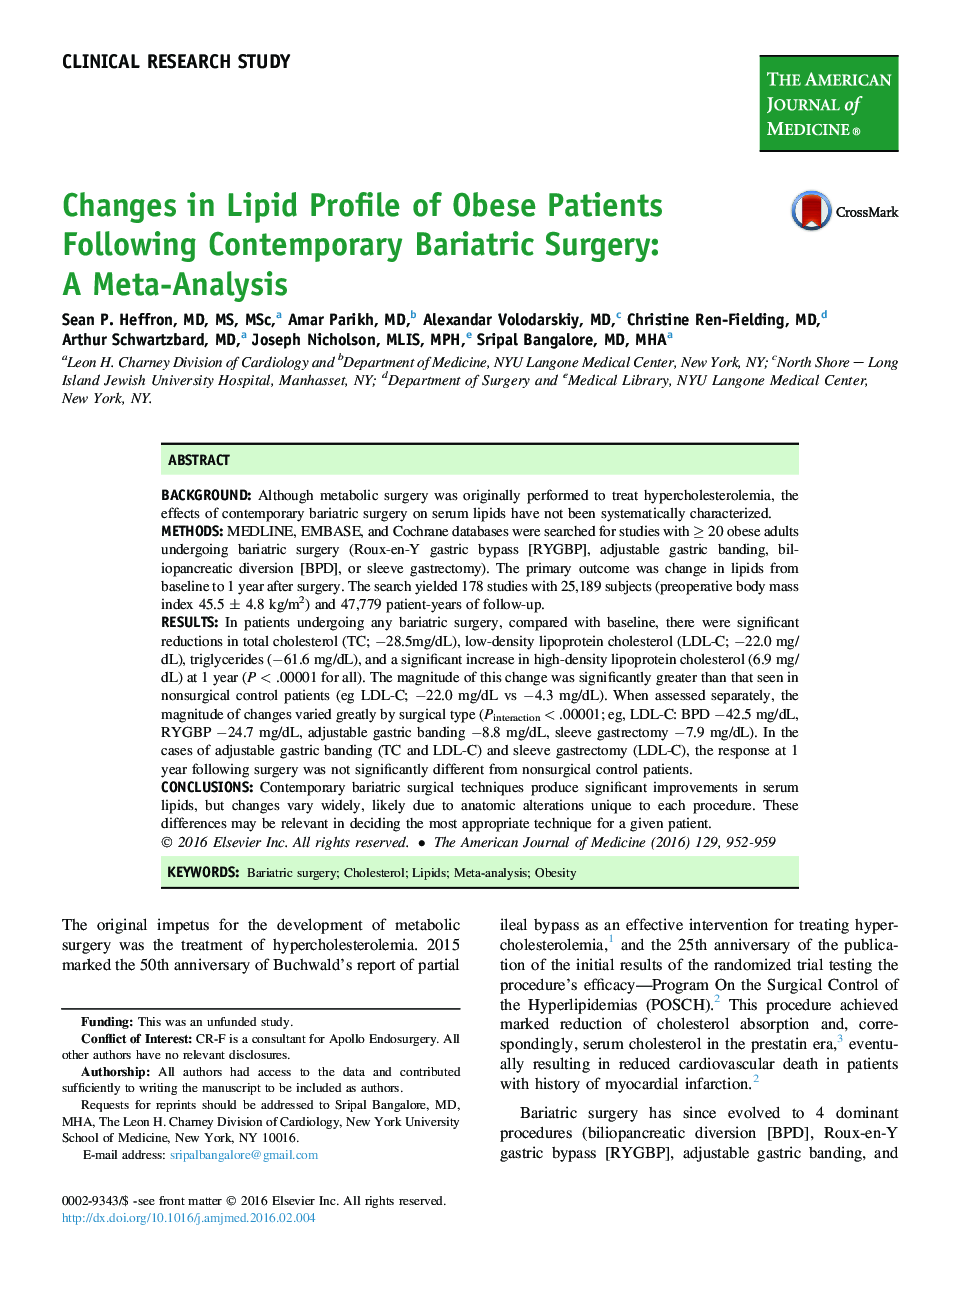 تغییرات در پروفایل لیپیدی بیماران چاق به دنبال جراحی چاقی: یک متاآنالیز